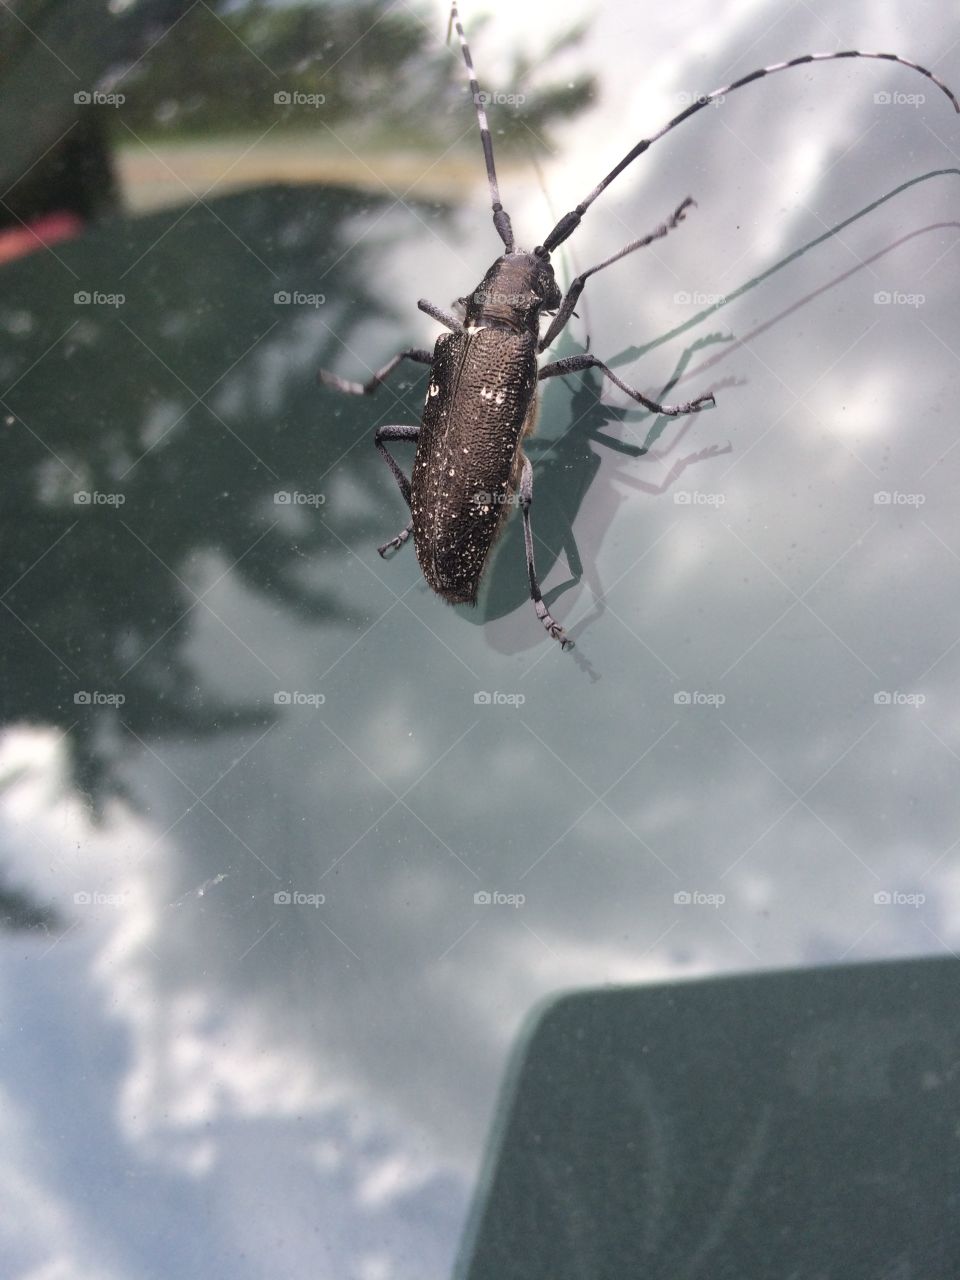 Creepy bug